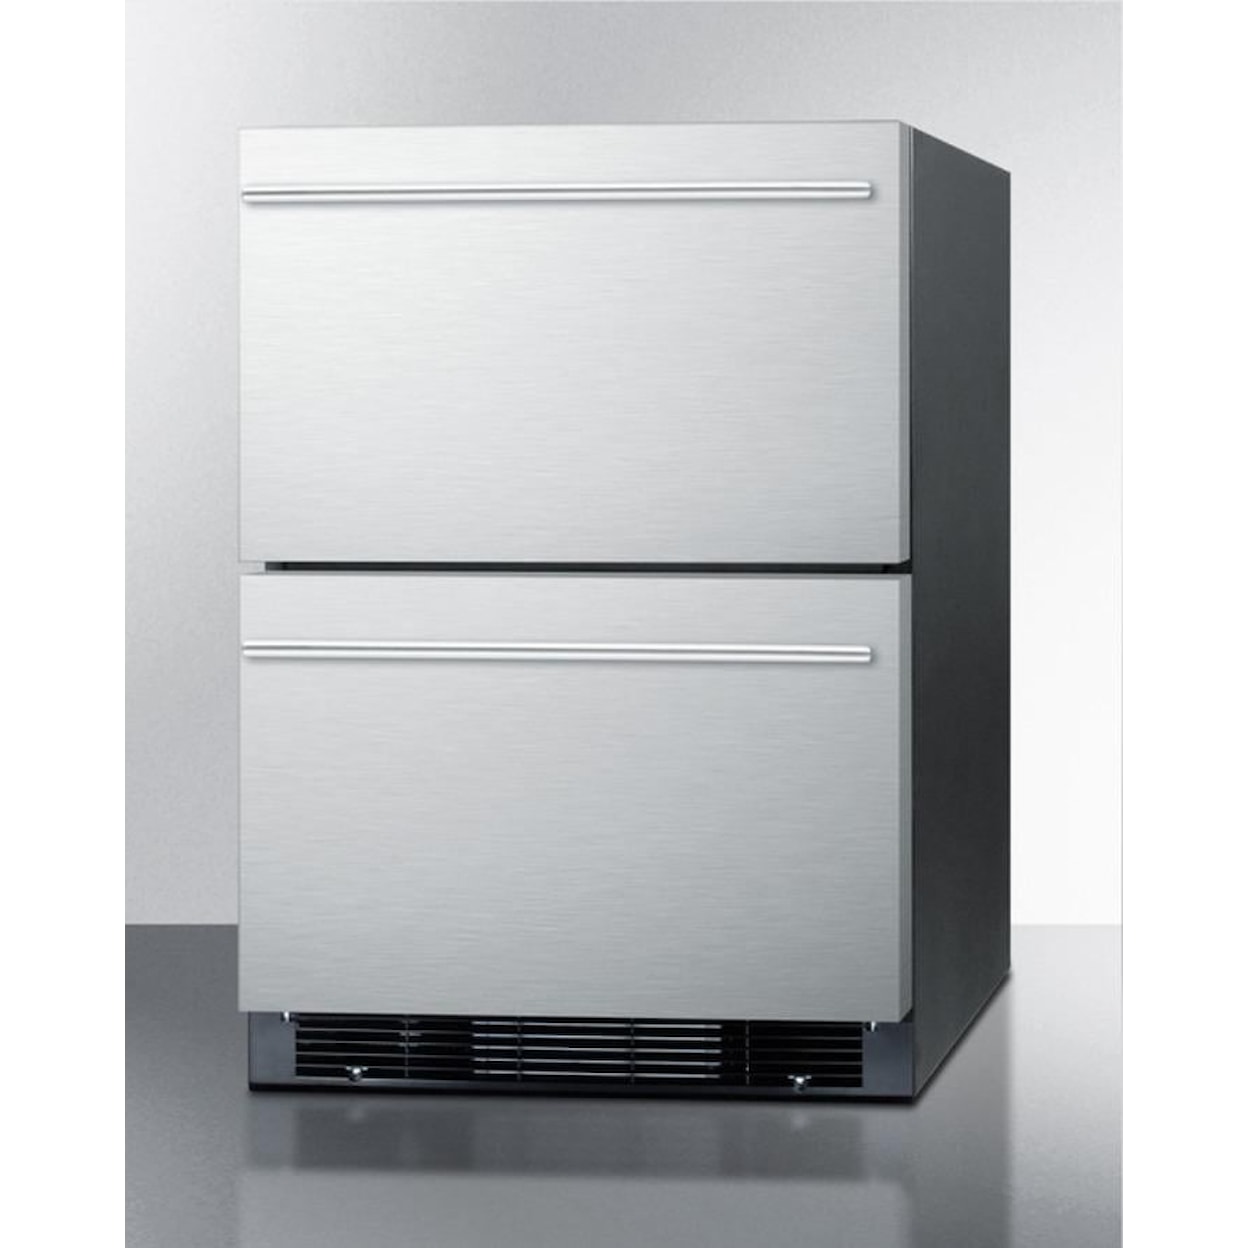 Summit Refrigerators Compact Refrigerator